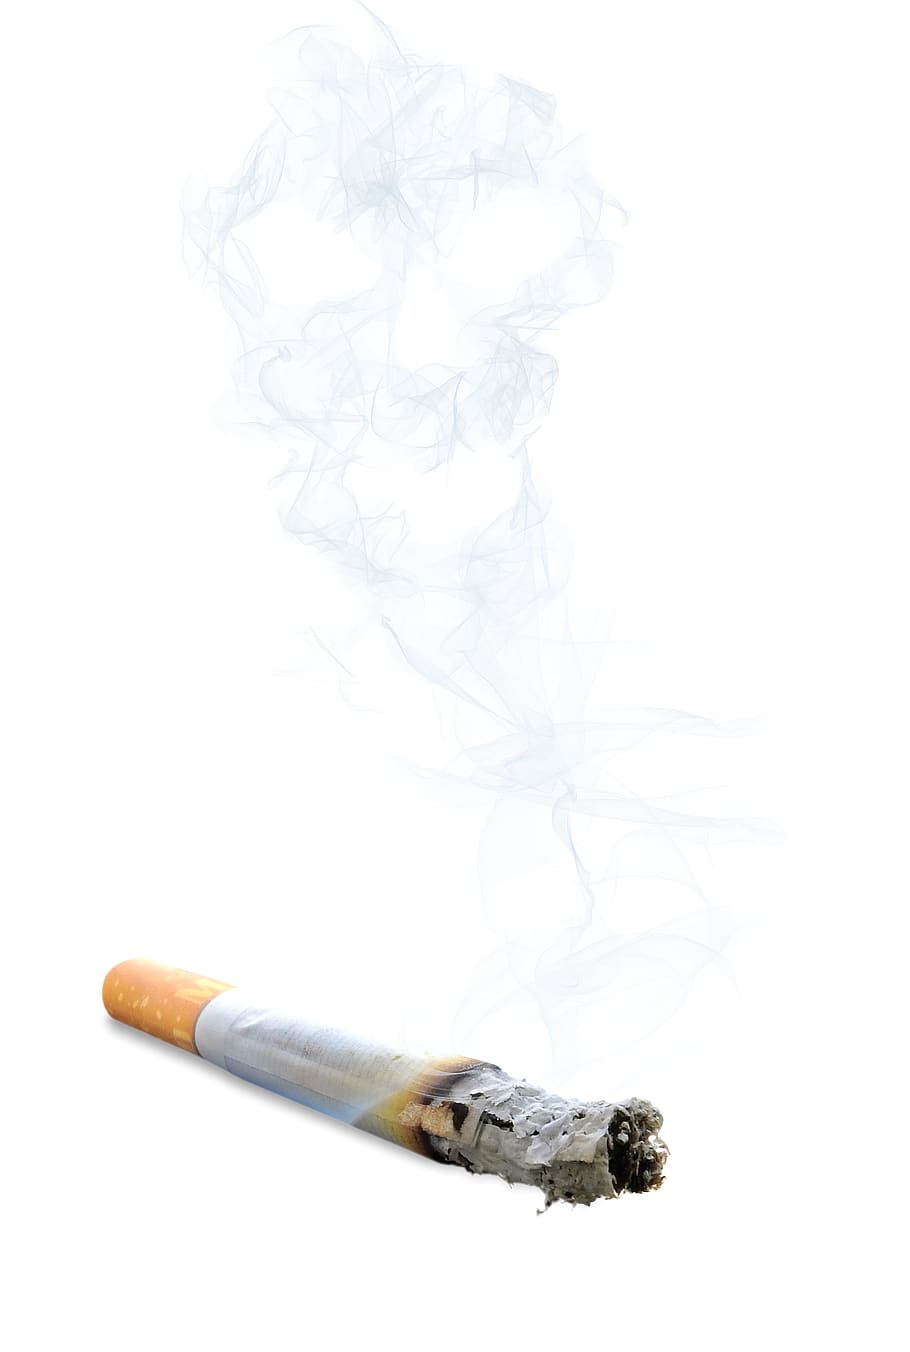 rokok, merokok, asap, bara, abu, kematian, tengkorak dan tulang bersilang, kecanduan, tidak sehat, tanda peringatan